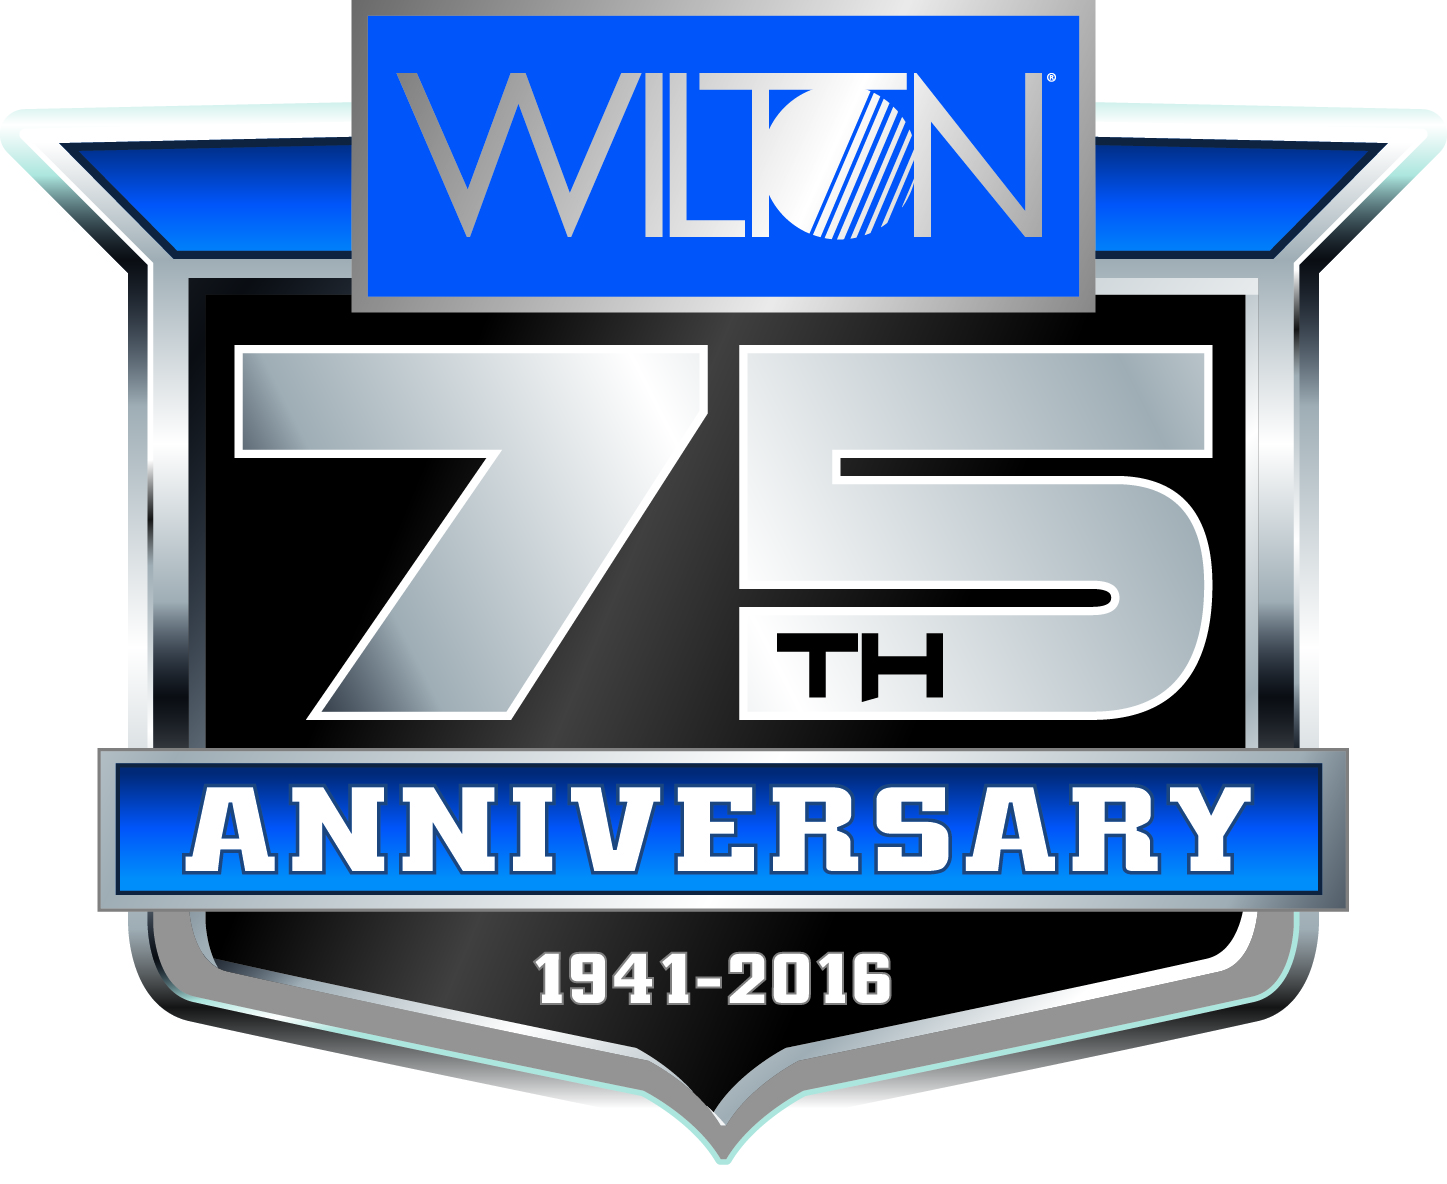 Wilton's 75th Anniversary